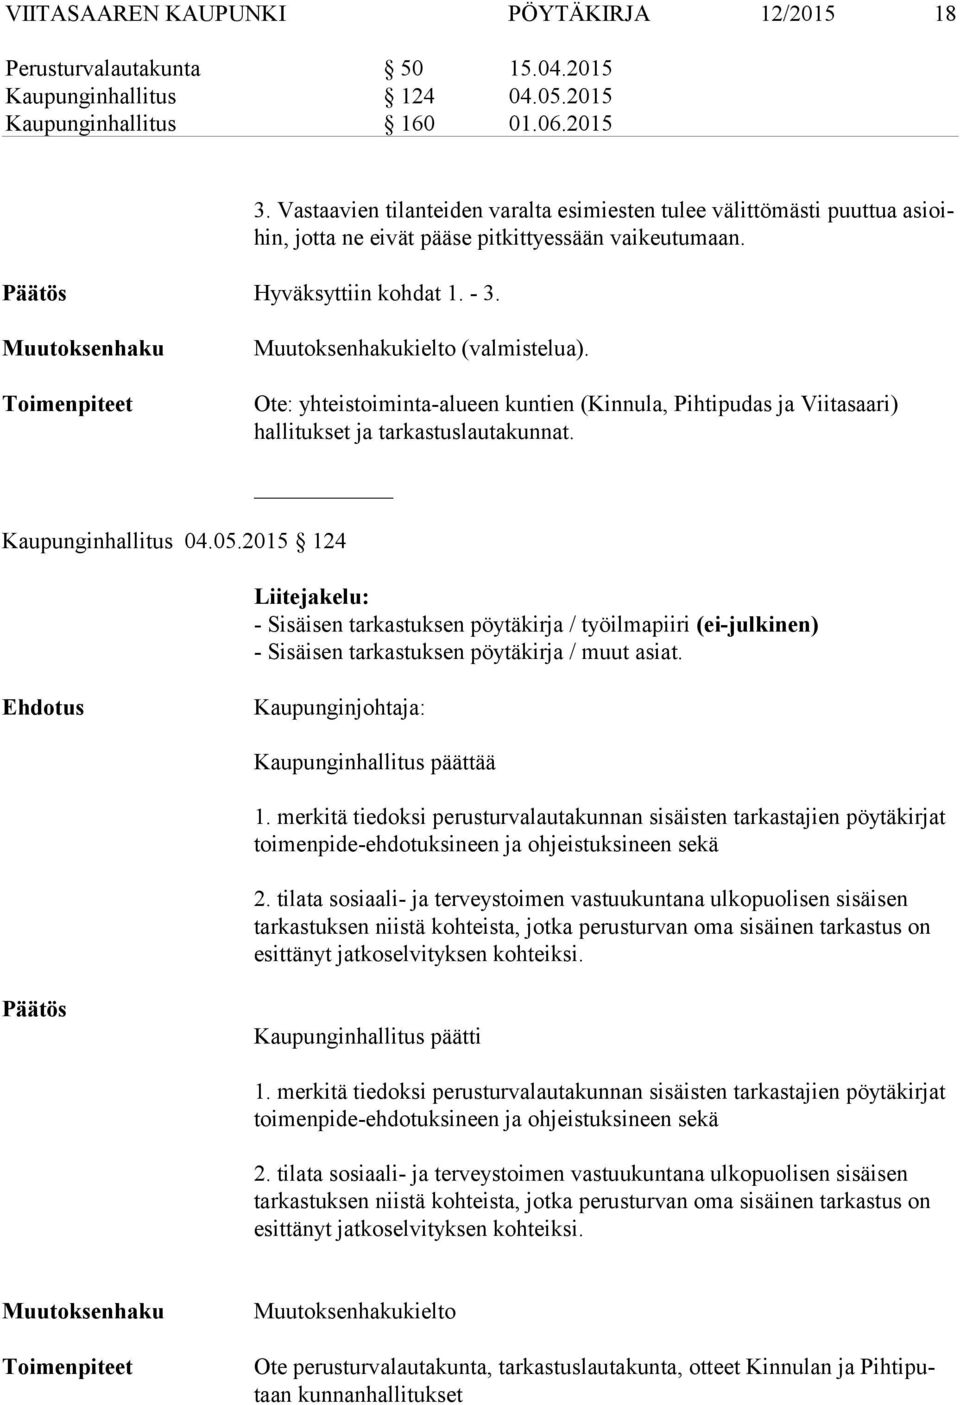 Muutoksenhaku Toimenpiteet Muutoksenhakukielto (valmistelua). Ote: yhteistoiminta-alueen kuntien (Kinnula, Pihtipudas ja Viitasaari) hallitukset ja tarkastuslautakunnat. Kaupunginhallitus 04.05.